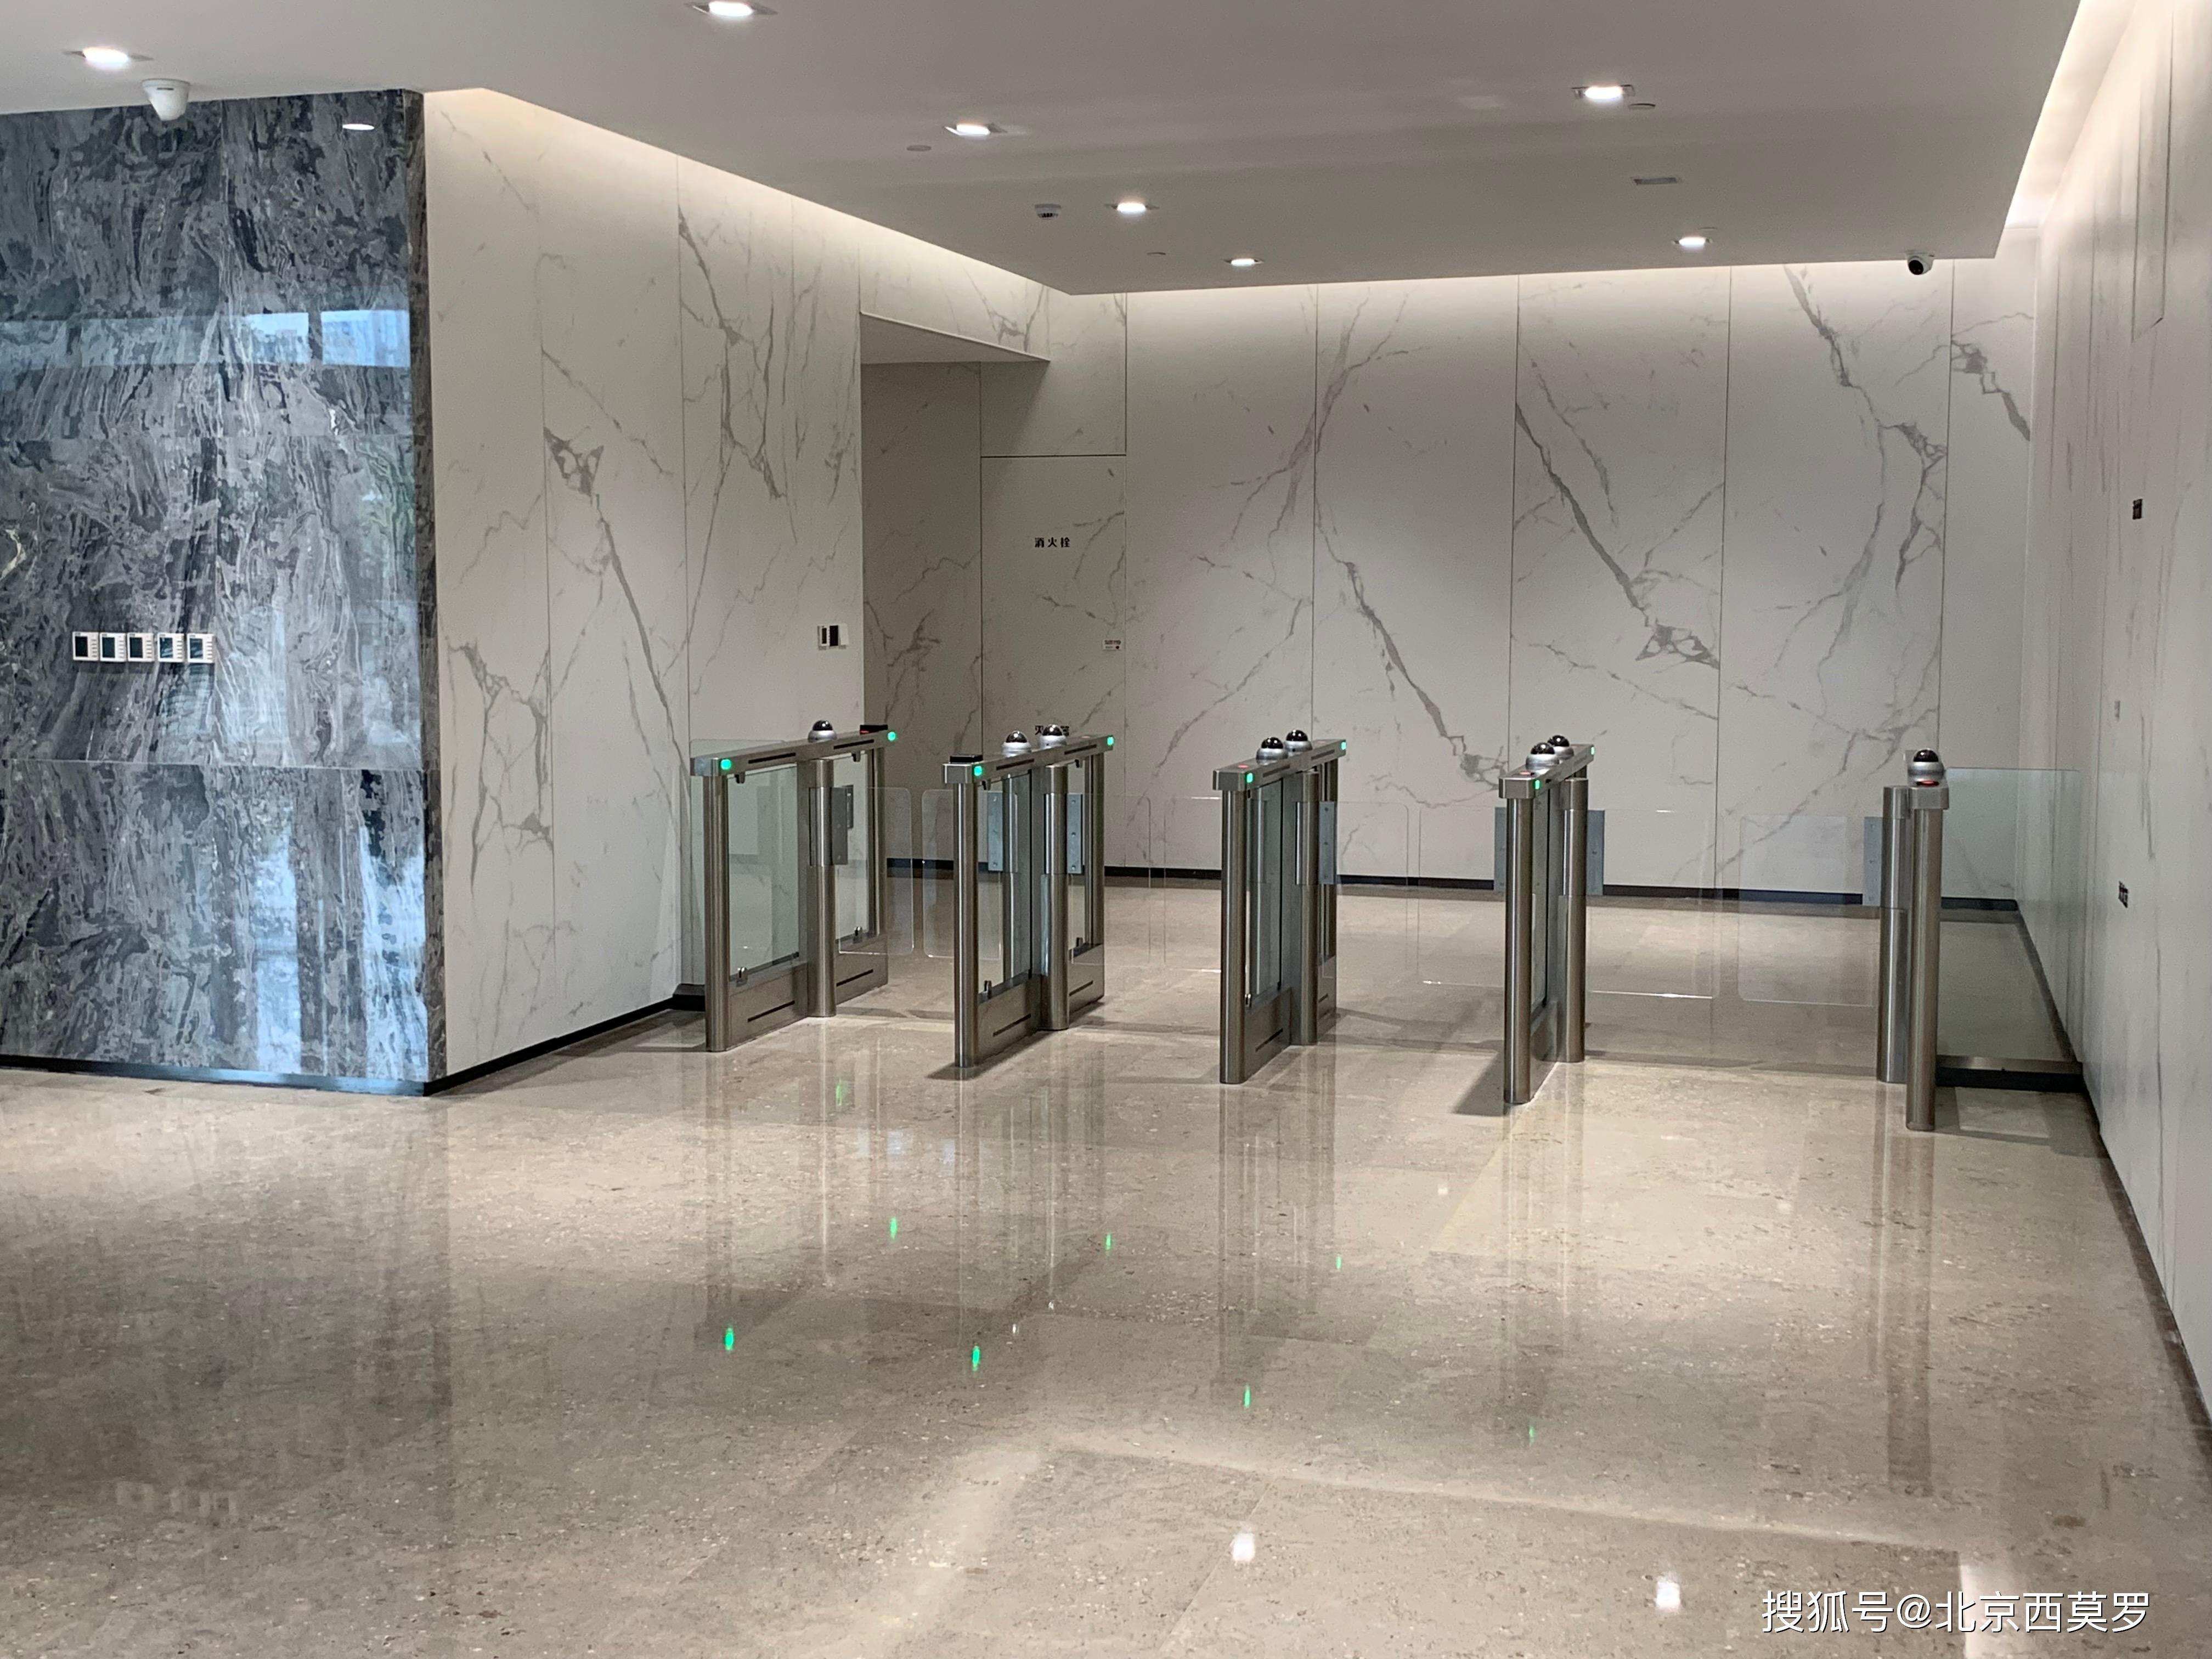 高峰期,出入拥挤的现象 电梯口走廊处效果图,两组通道外加玻璃围挡